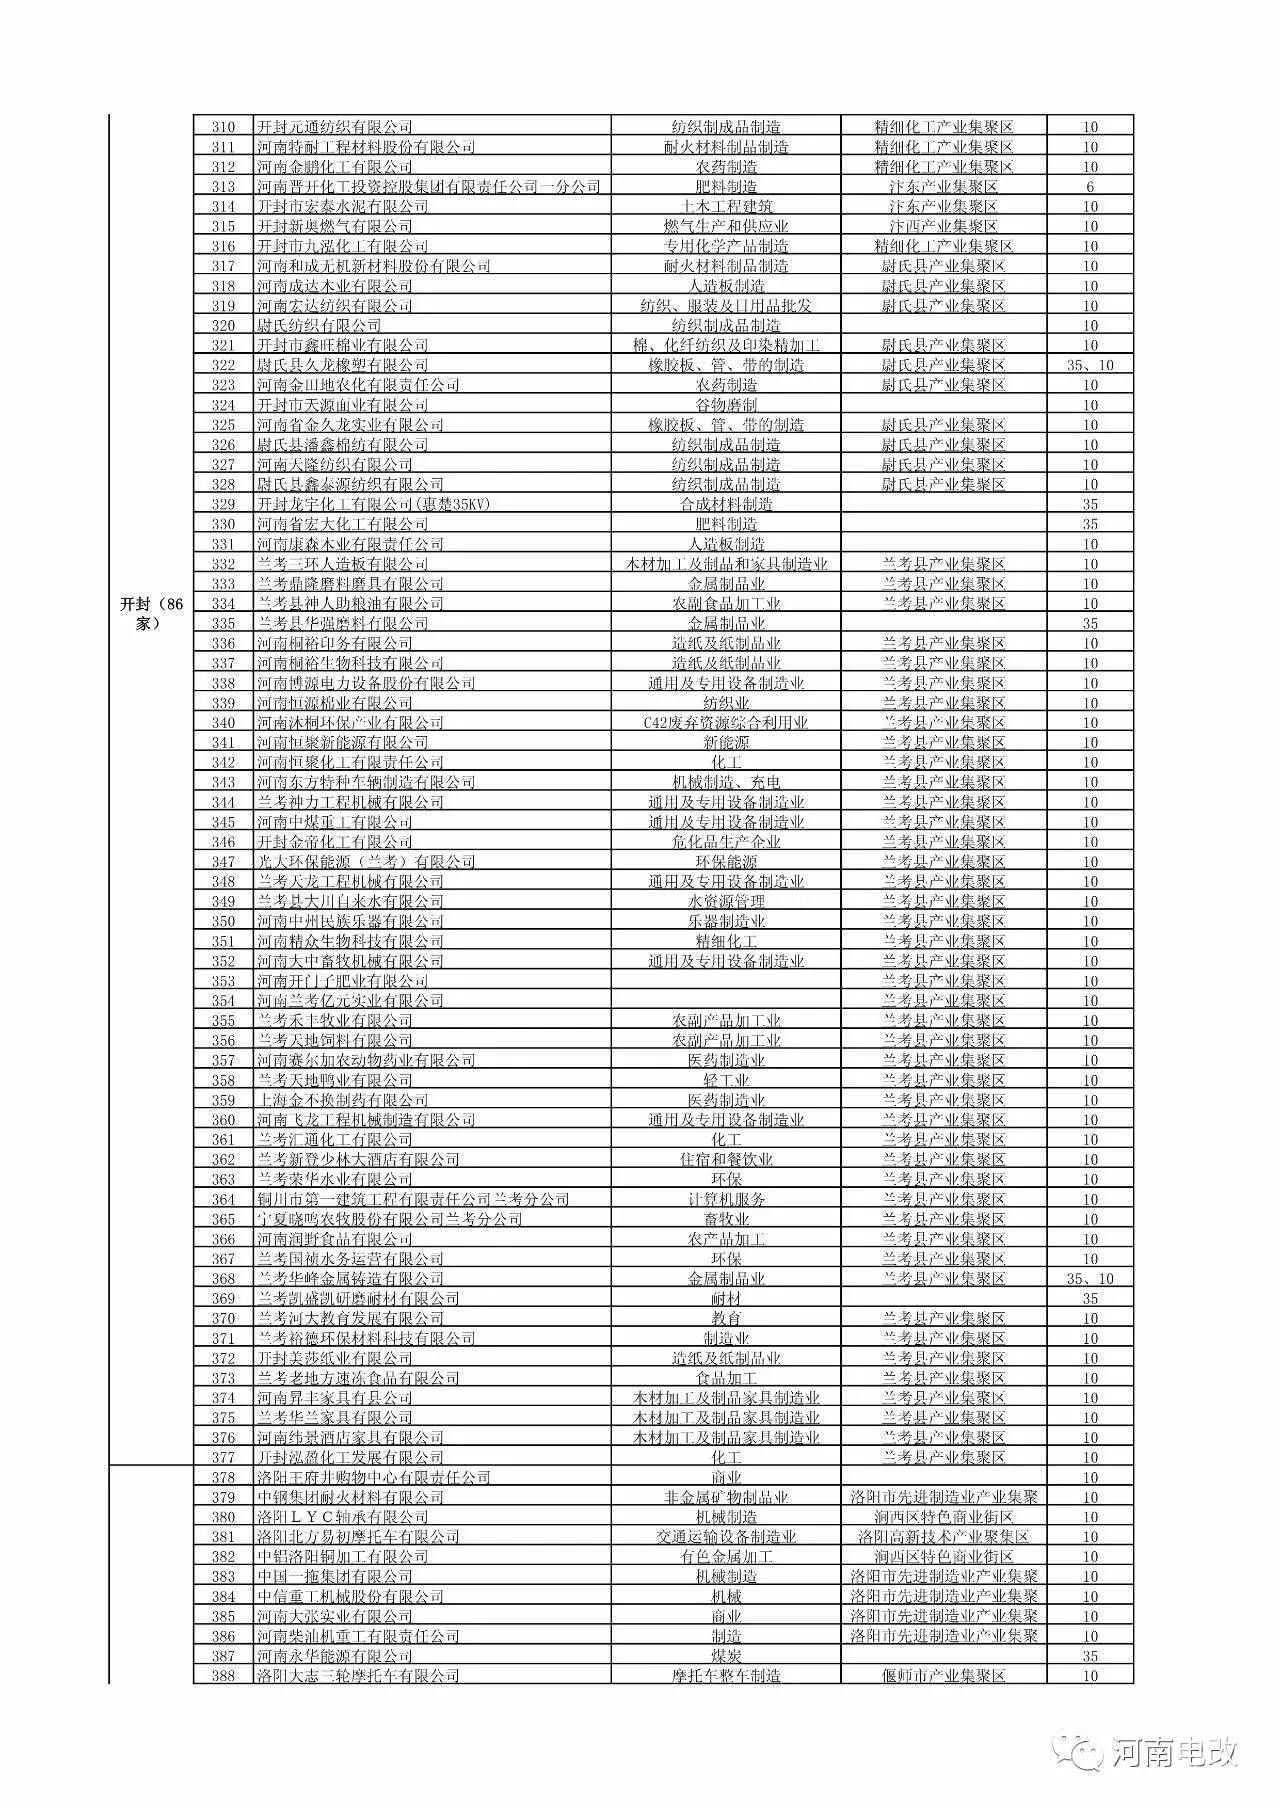 河南省2017年新增电力交易用户名单公示 1829家